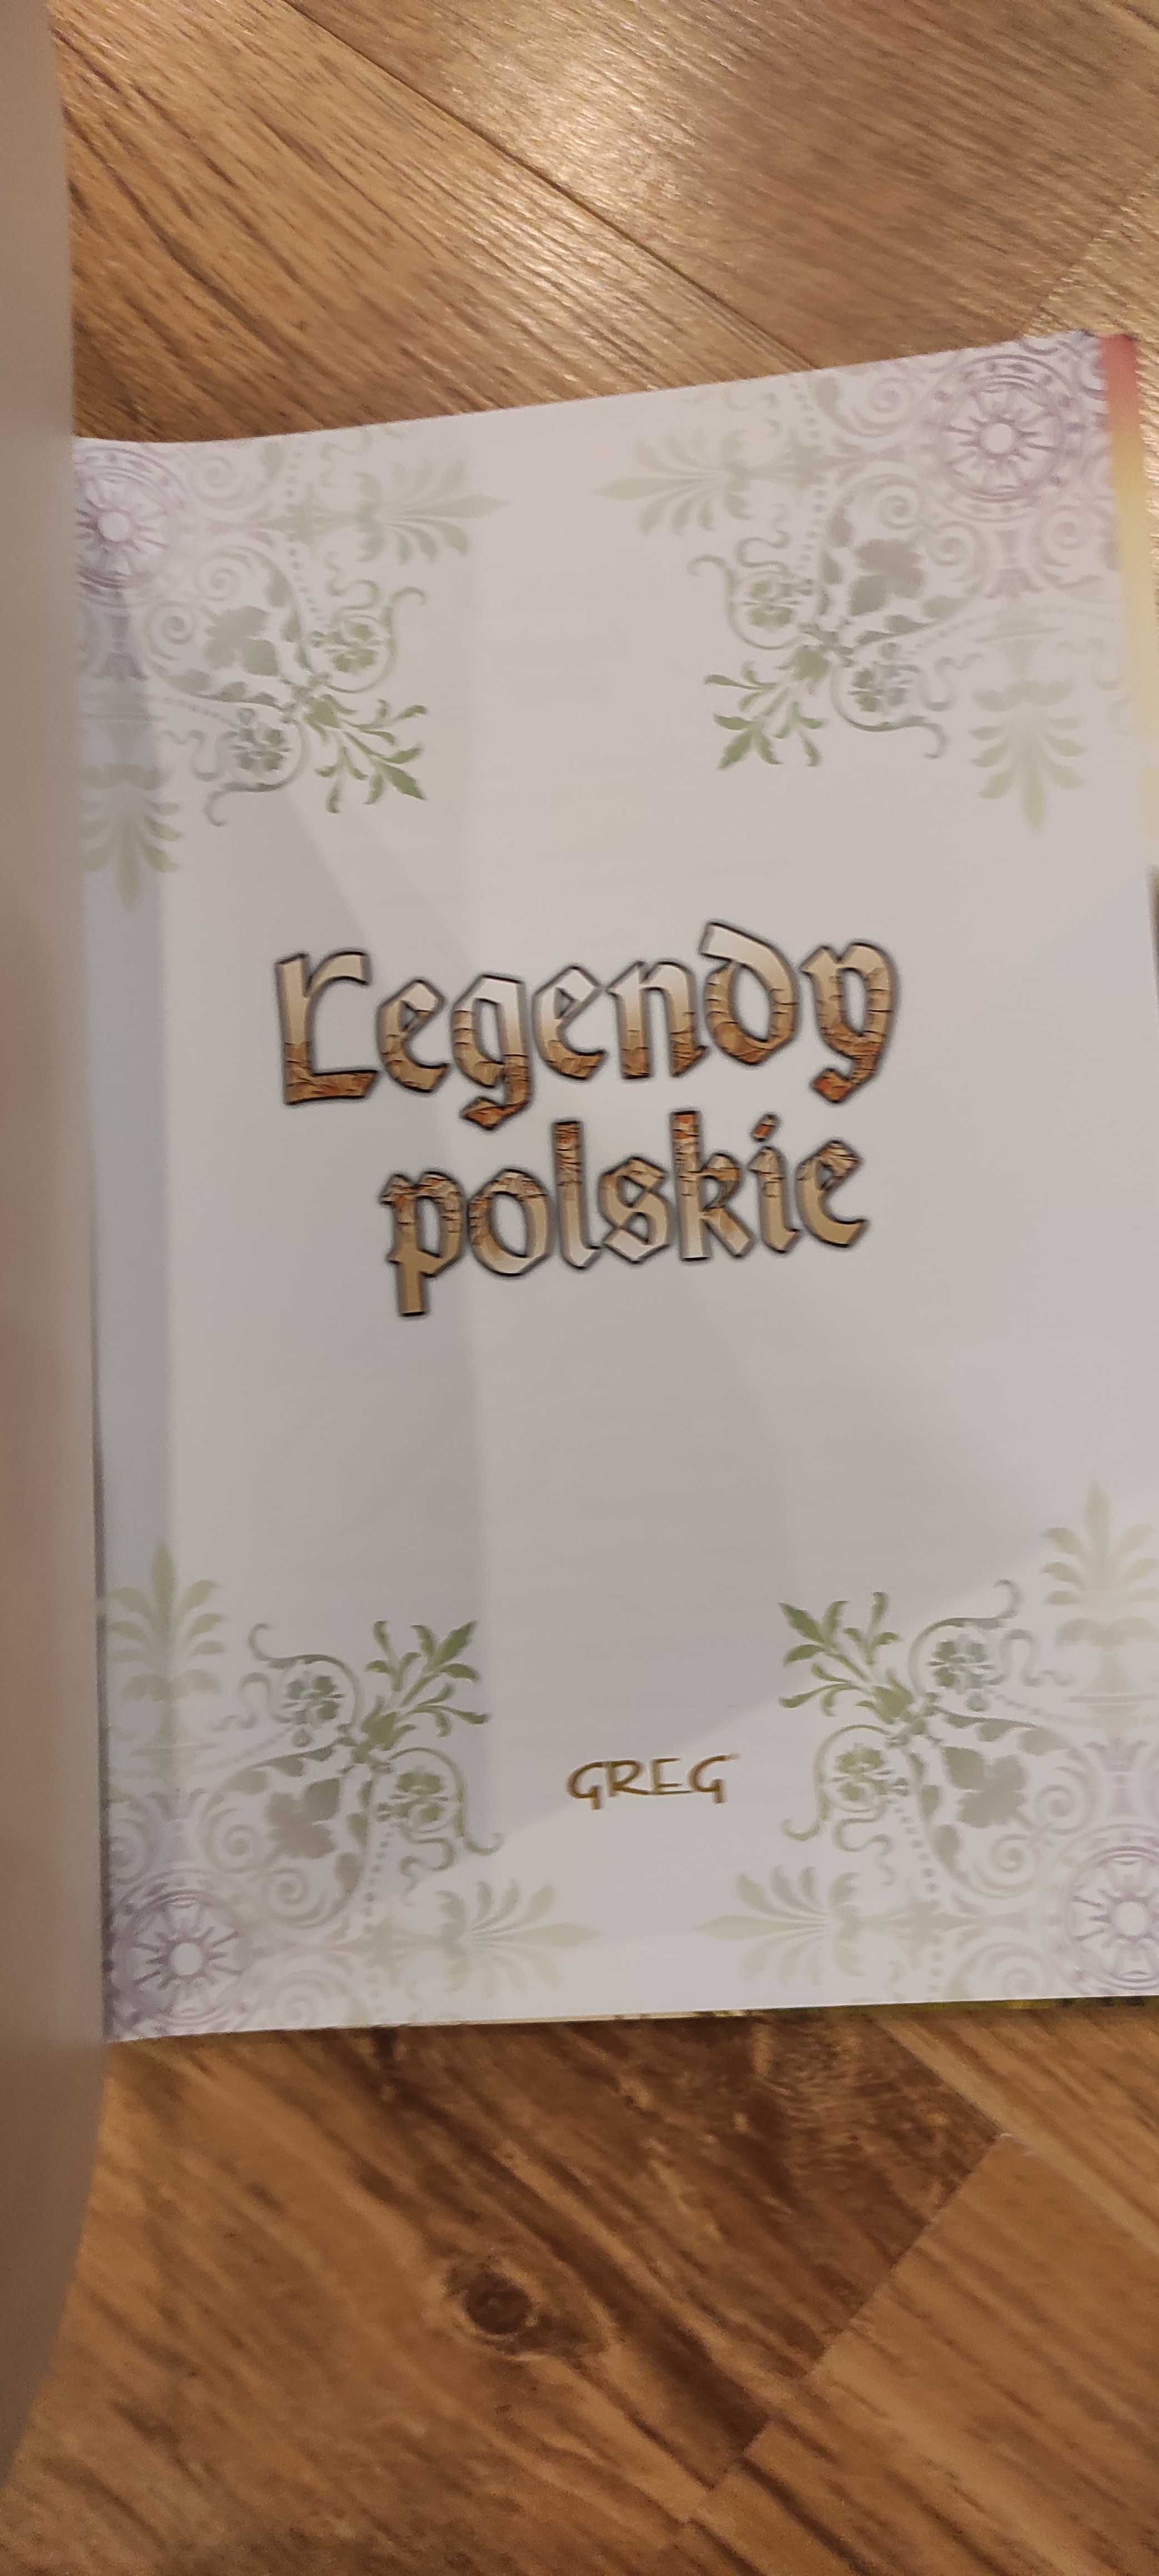 Legendy   polskie